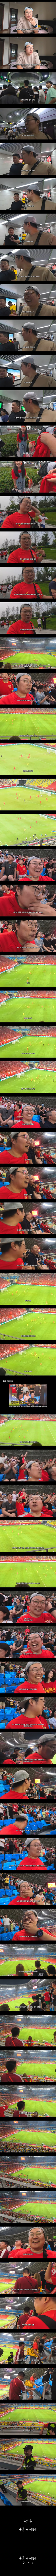 중국 축구 국대 경기 직관